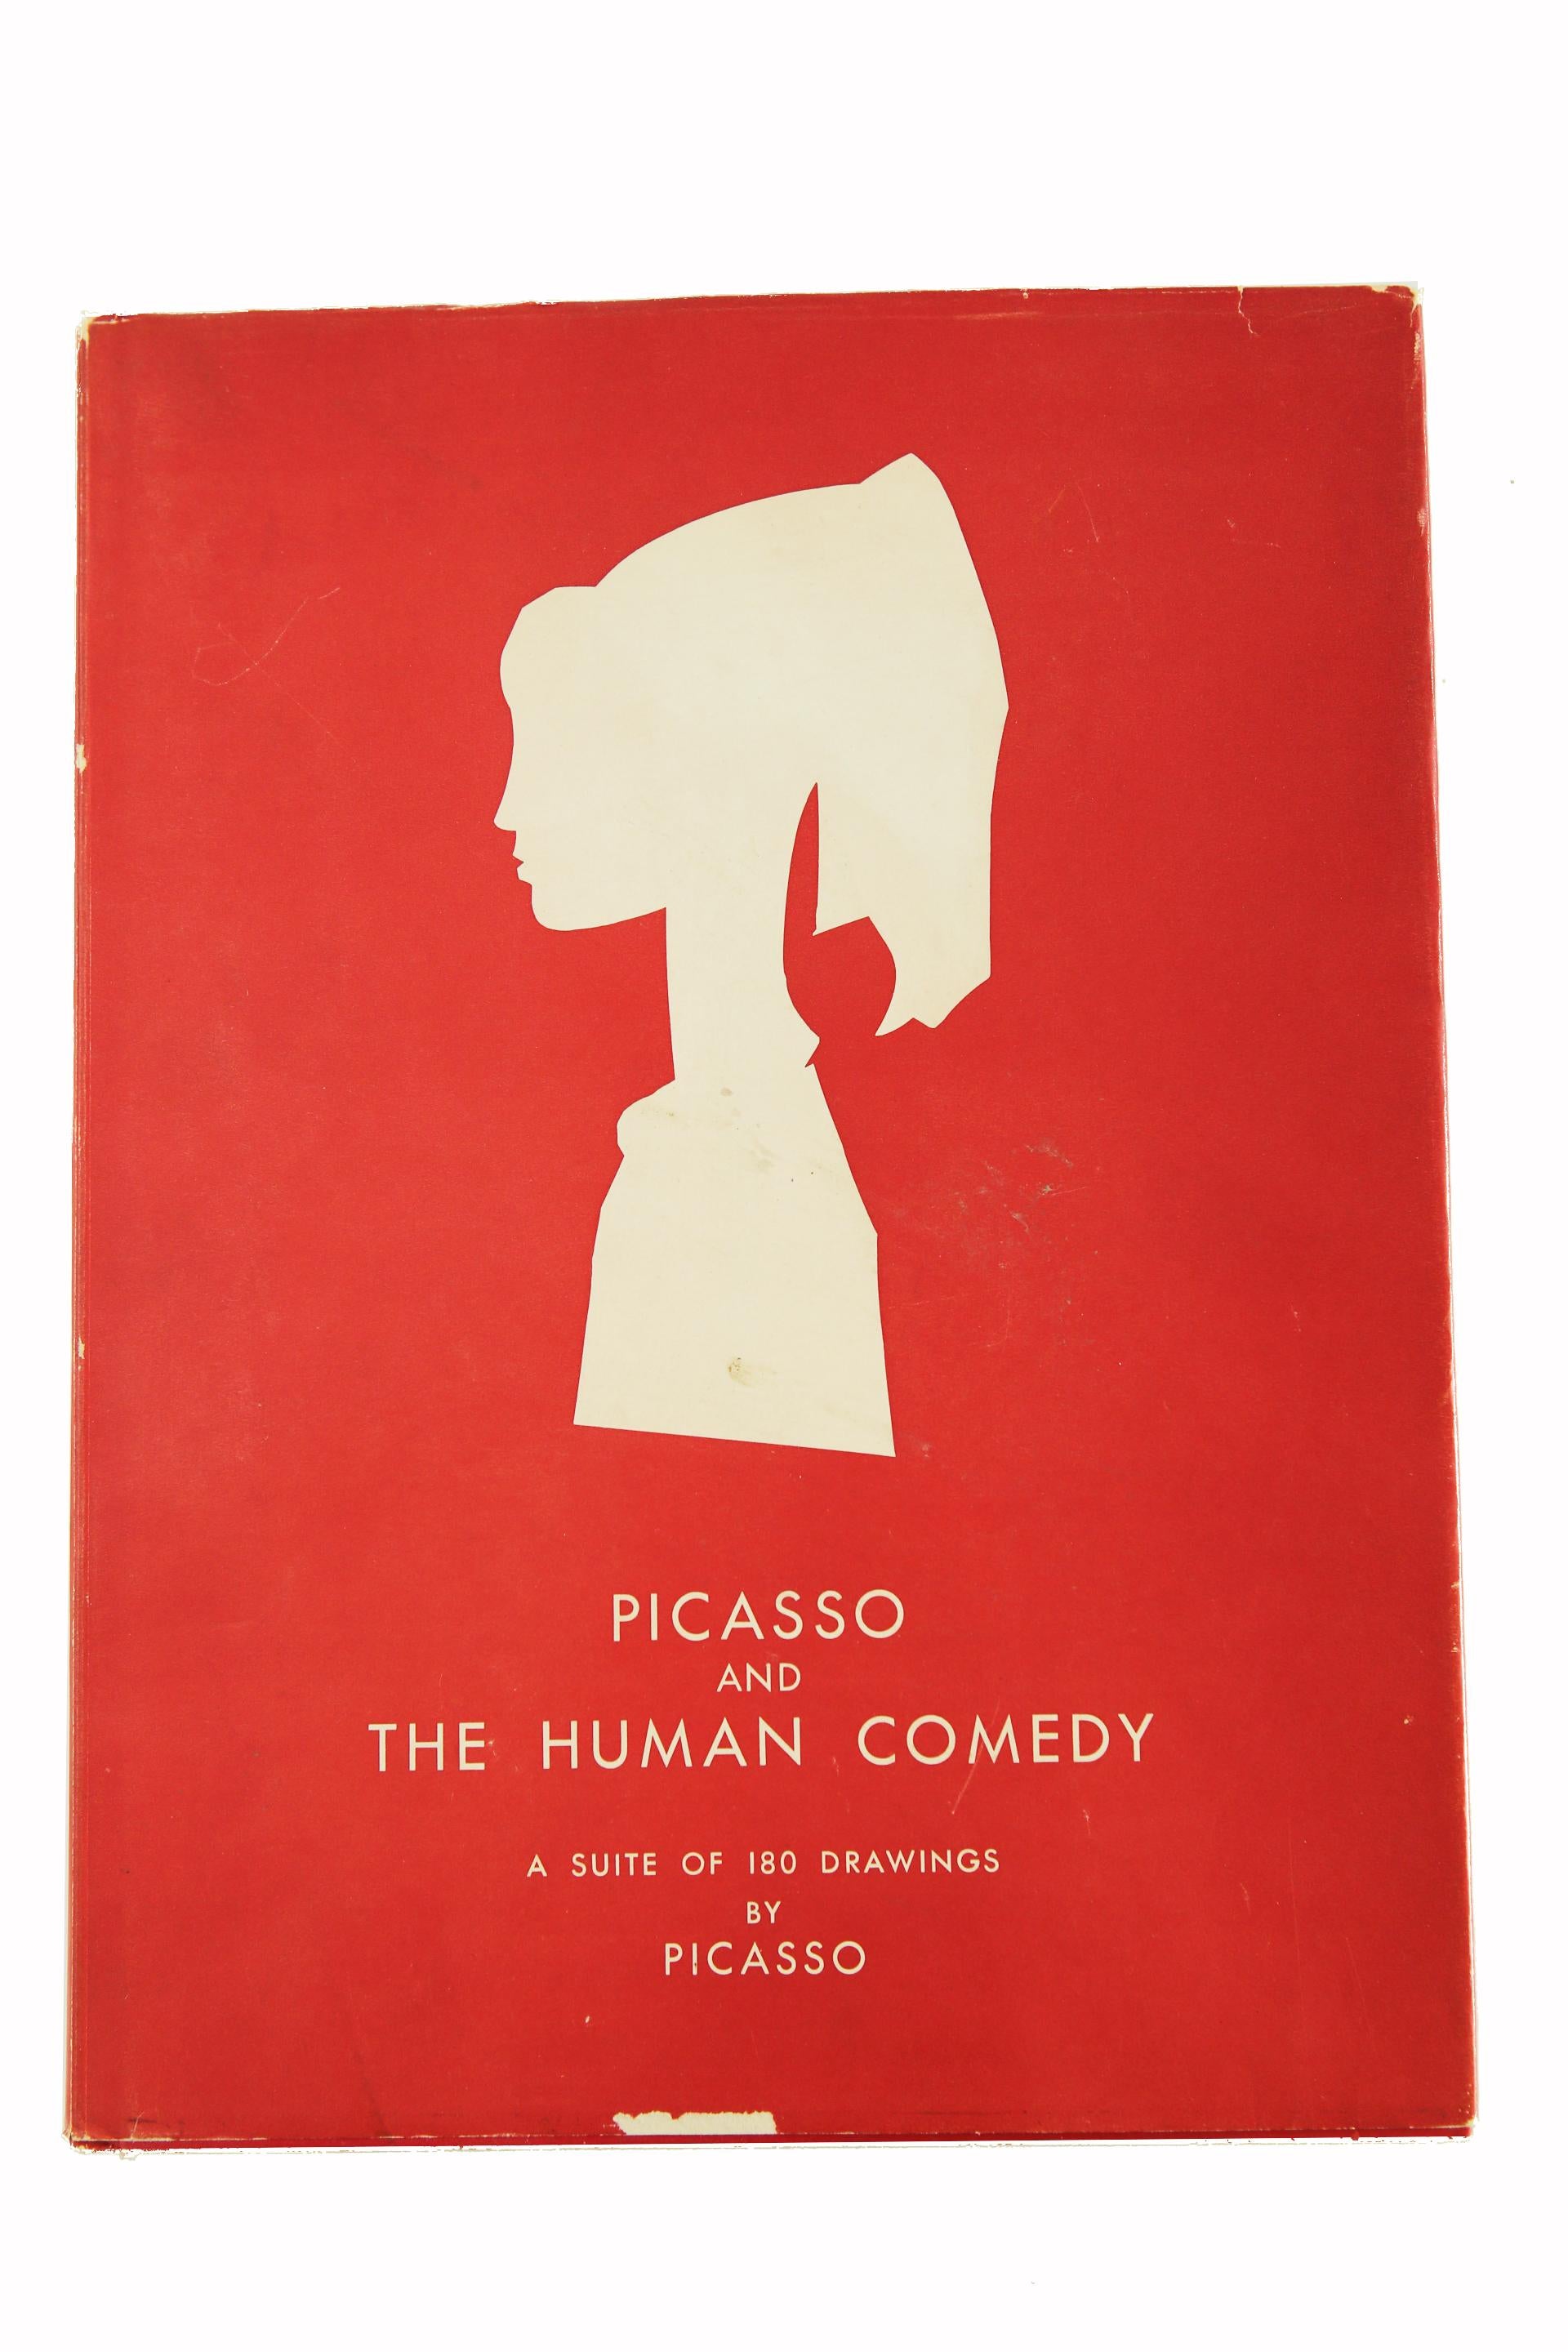 Picasso und die menschliche Komödie.  Suite von 180 Zeichnungen von Picasso. (Verve 29-30) – Art von (after) Pablo Picasso